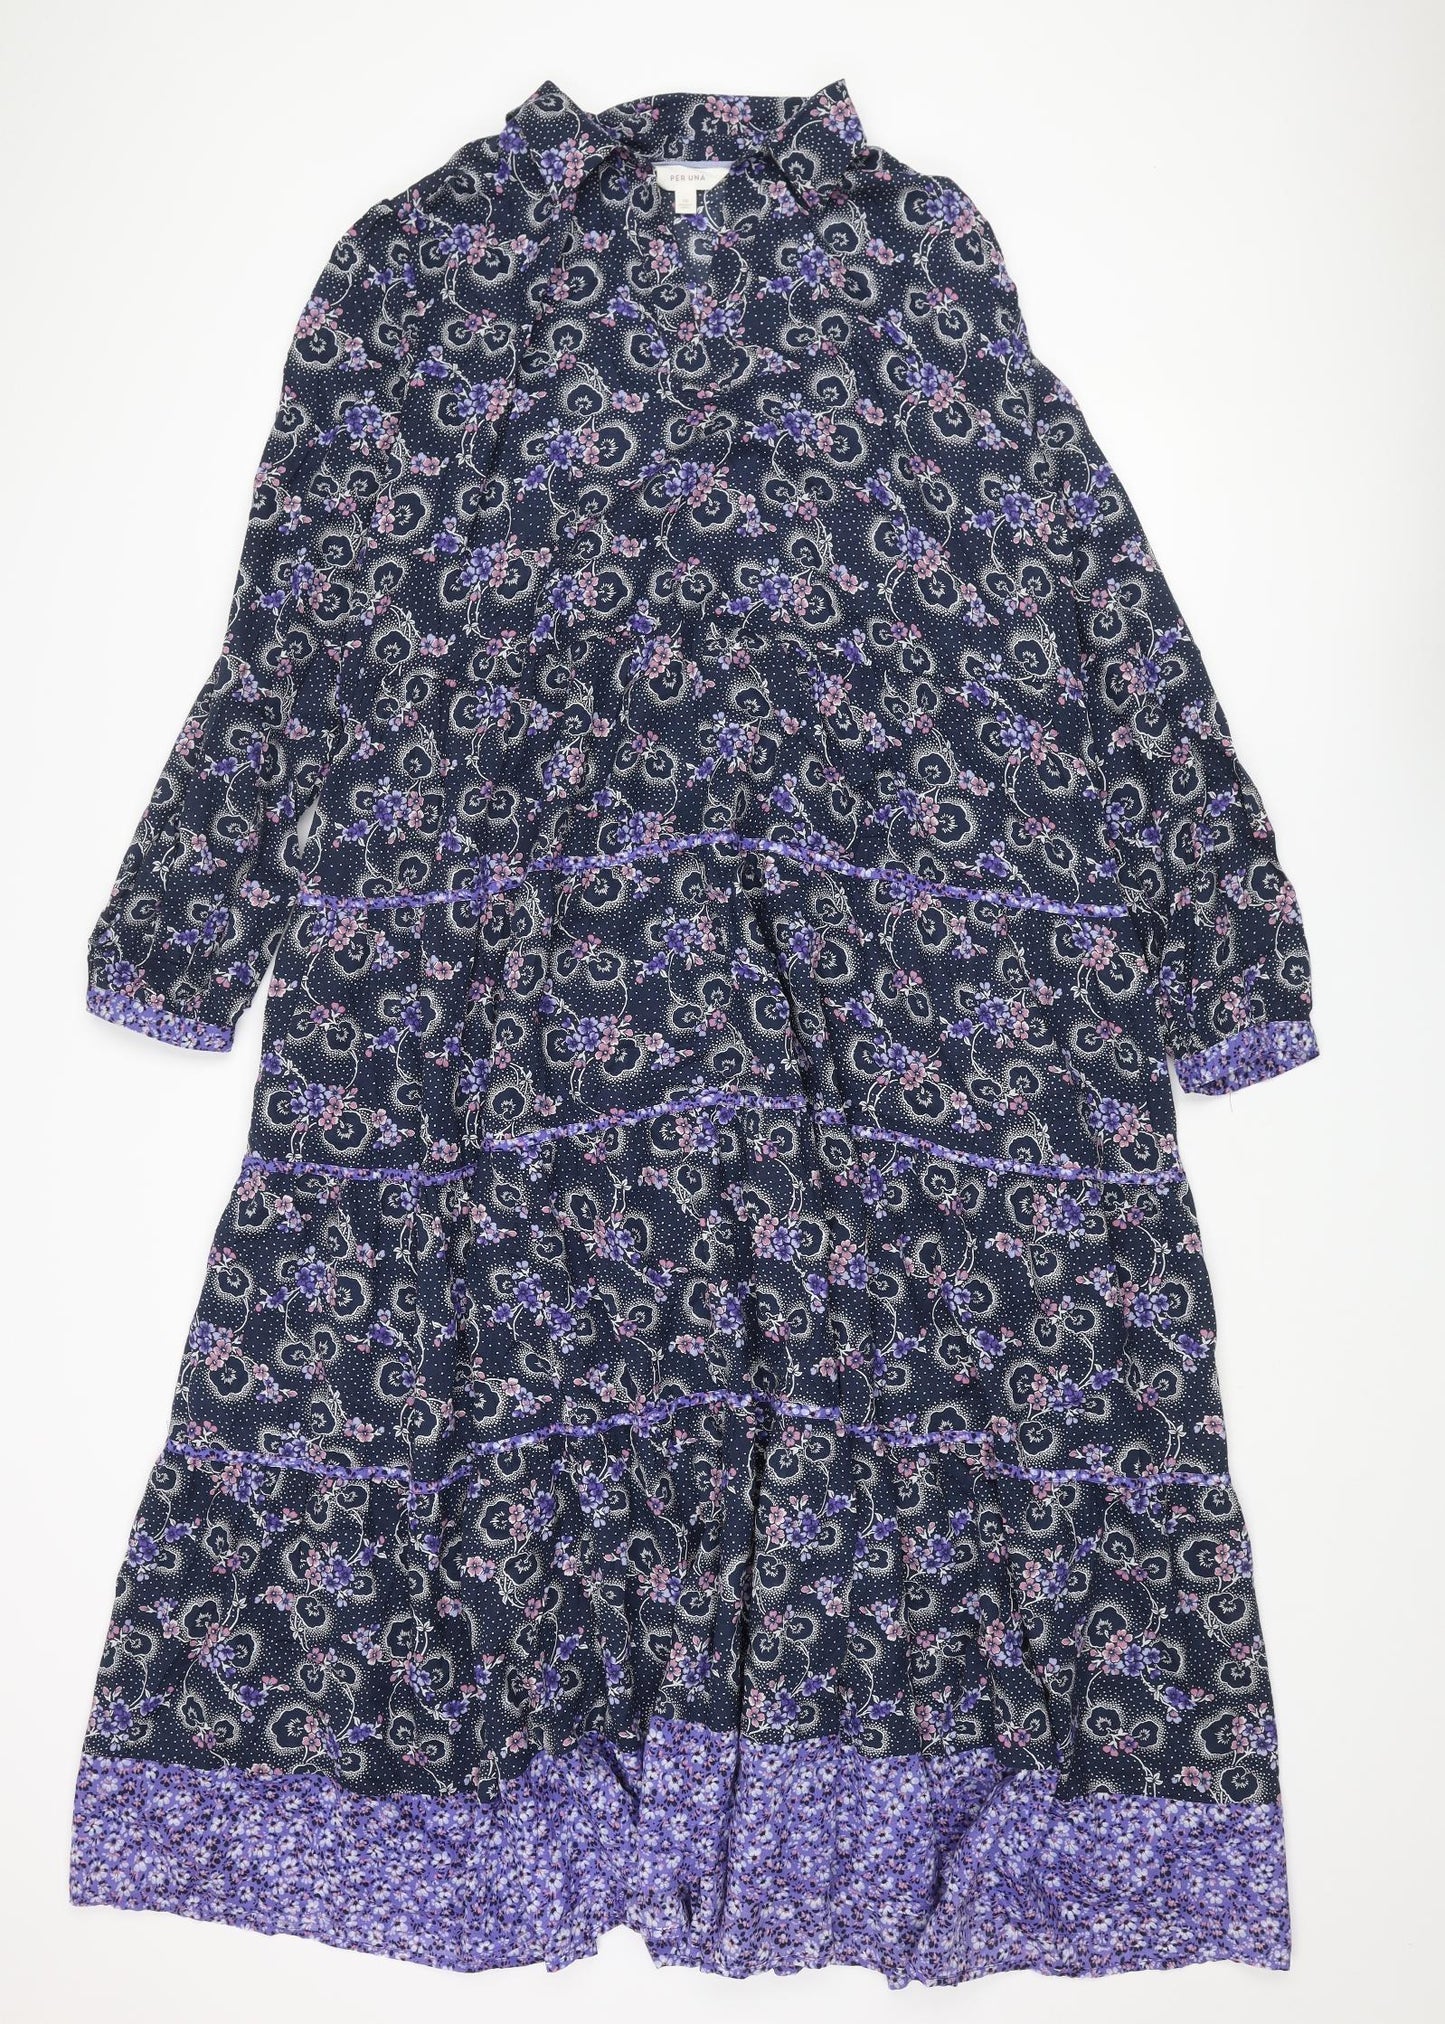 Per Una Womens Blue Floral Cotton Maxi Size 16 Collared Pullover